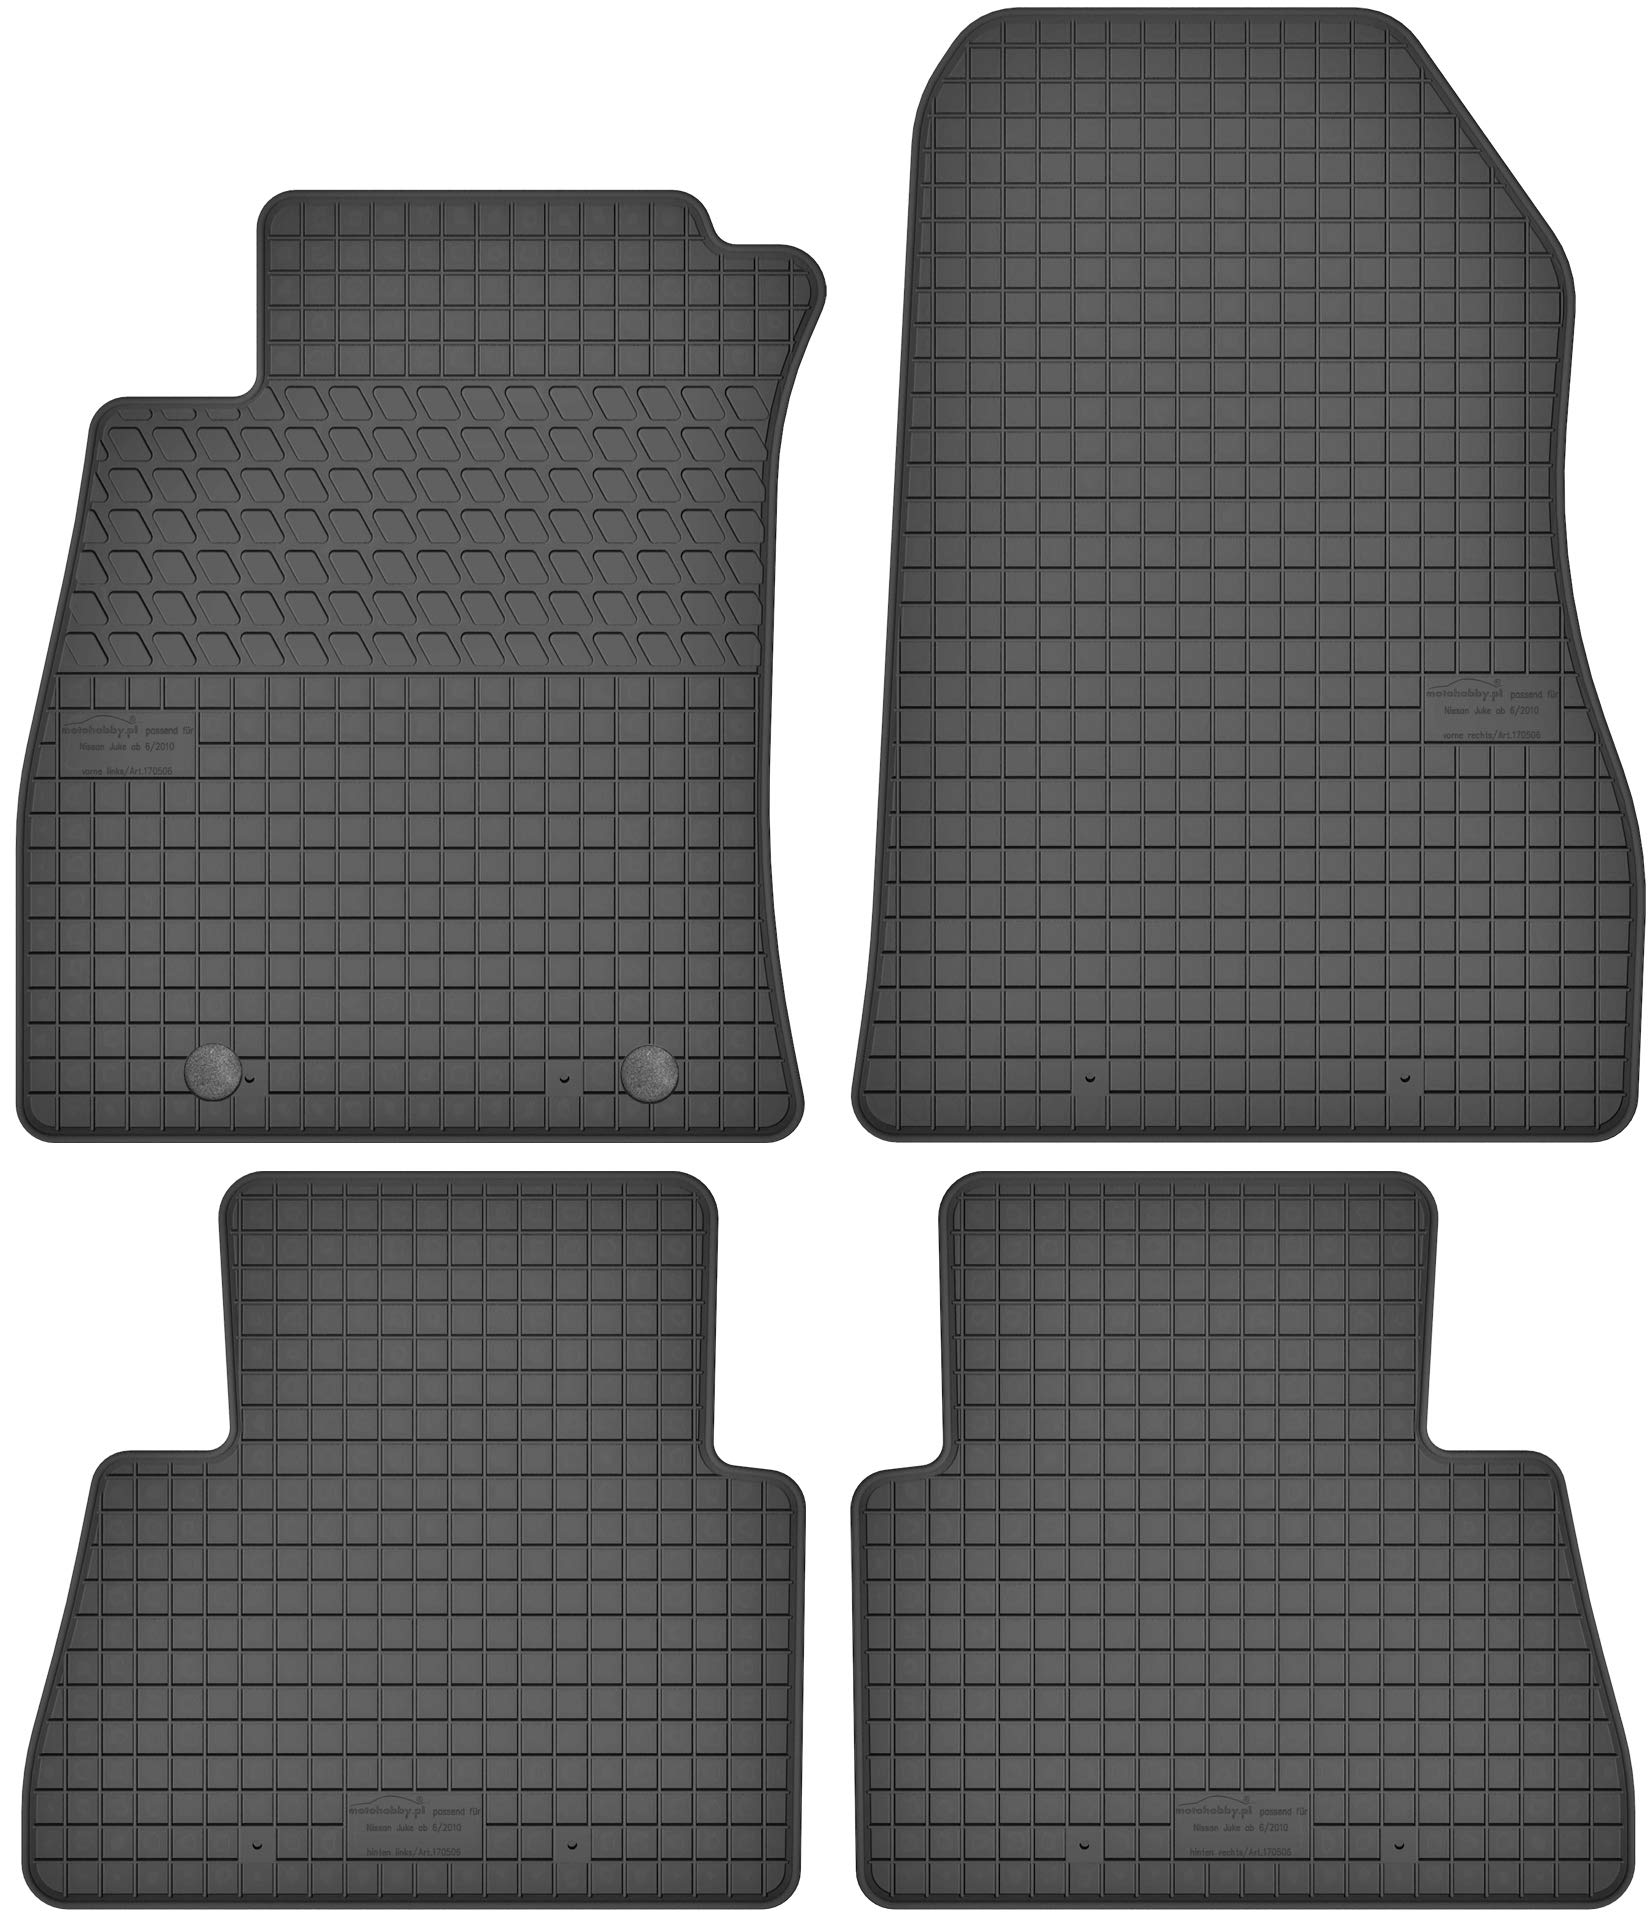 Gummimatten Gummi Fußmatten Satz für Nissan Juke (ab 2010) - Passgenau